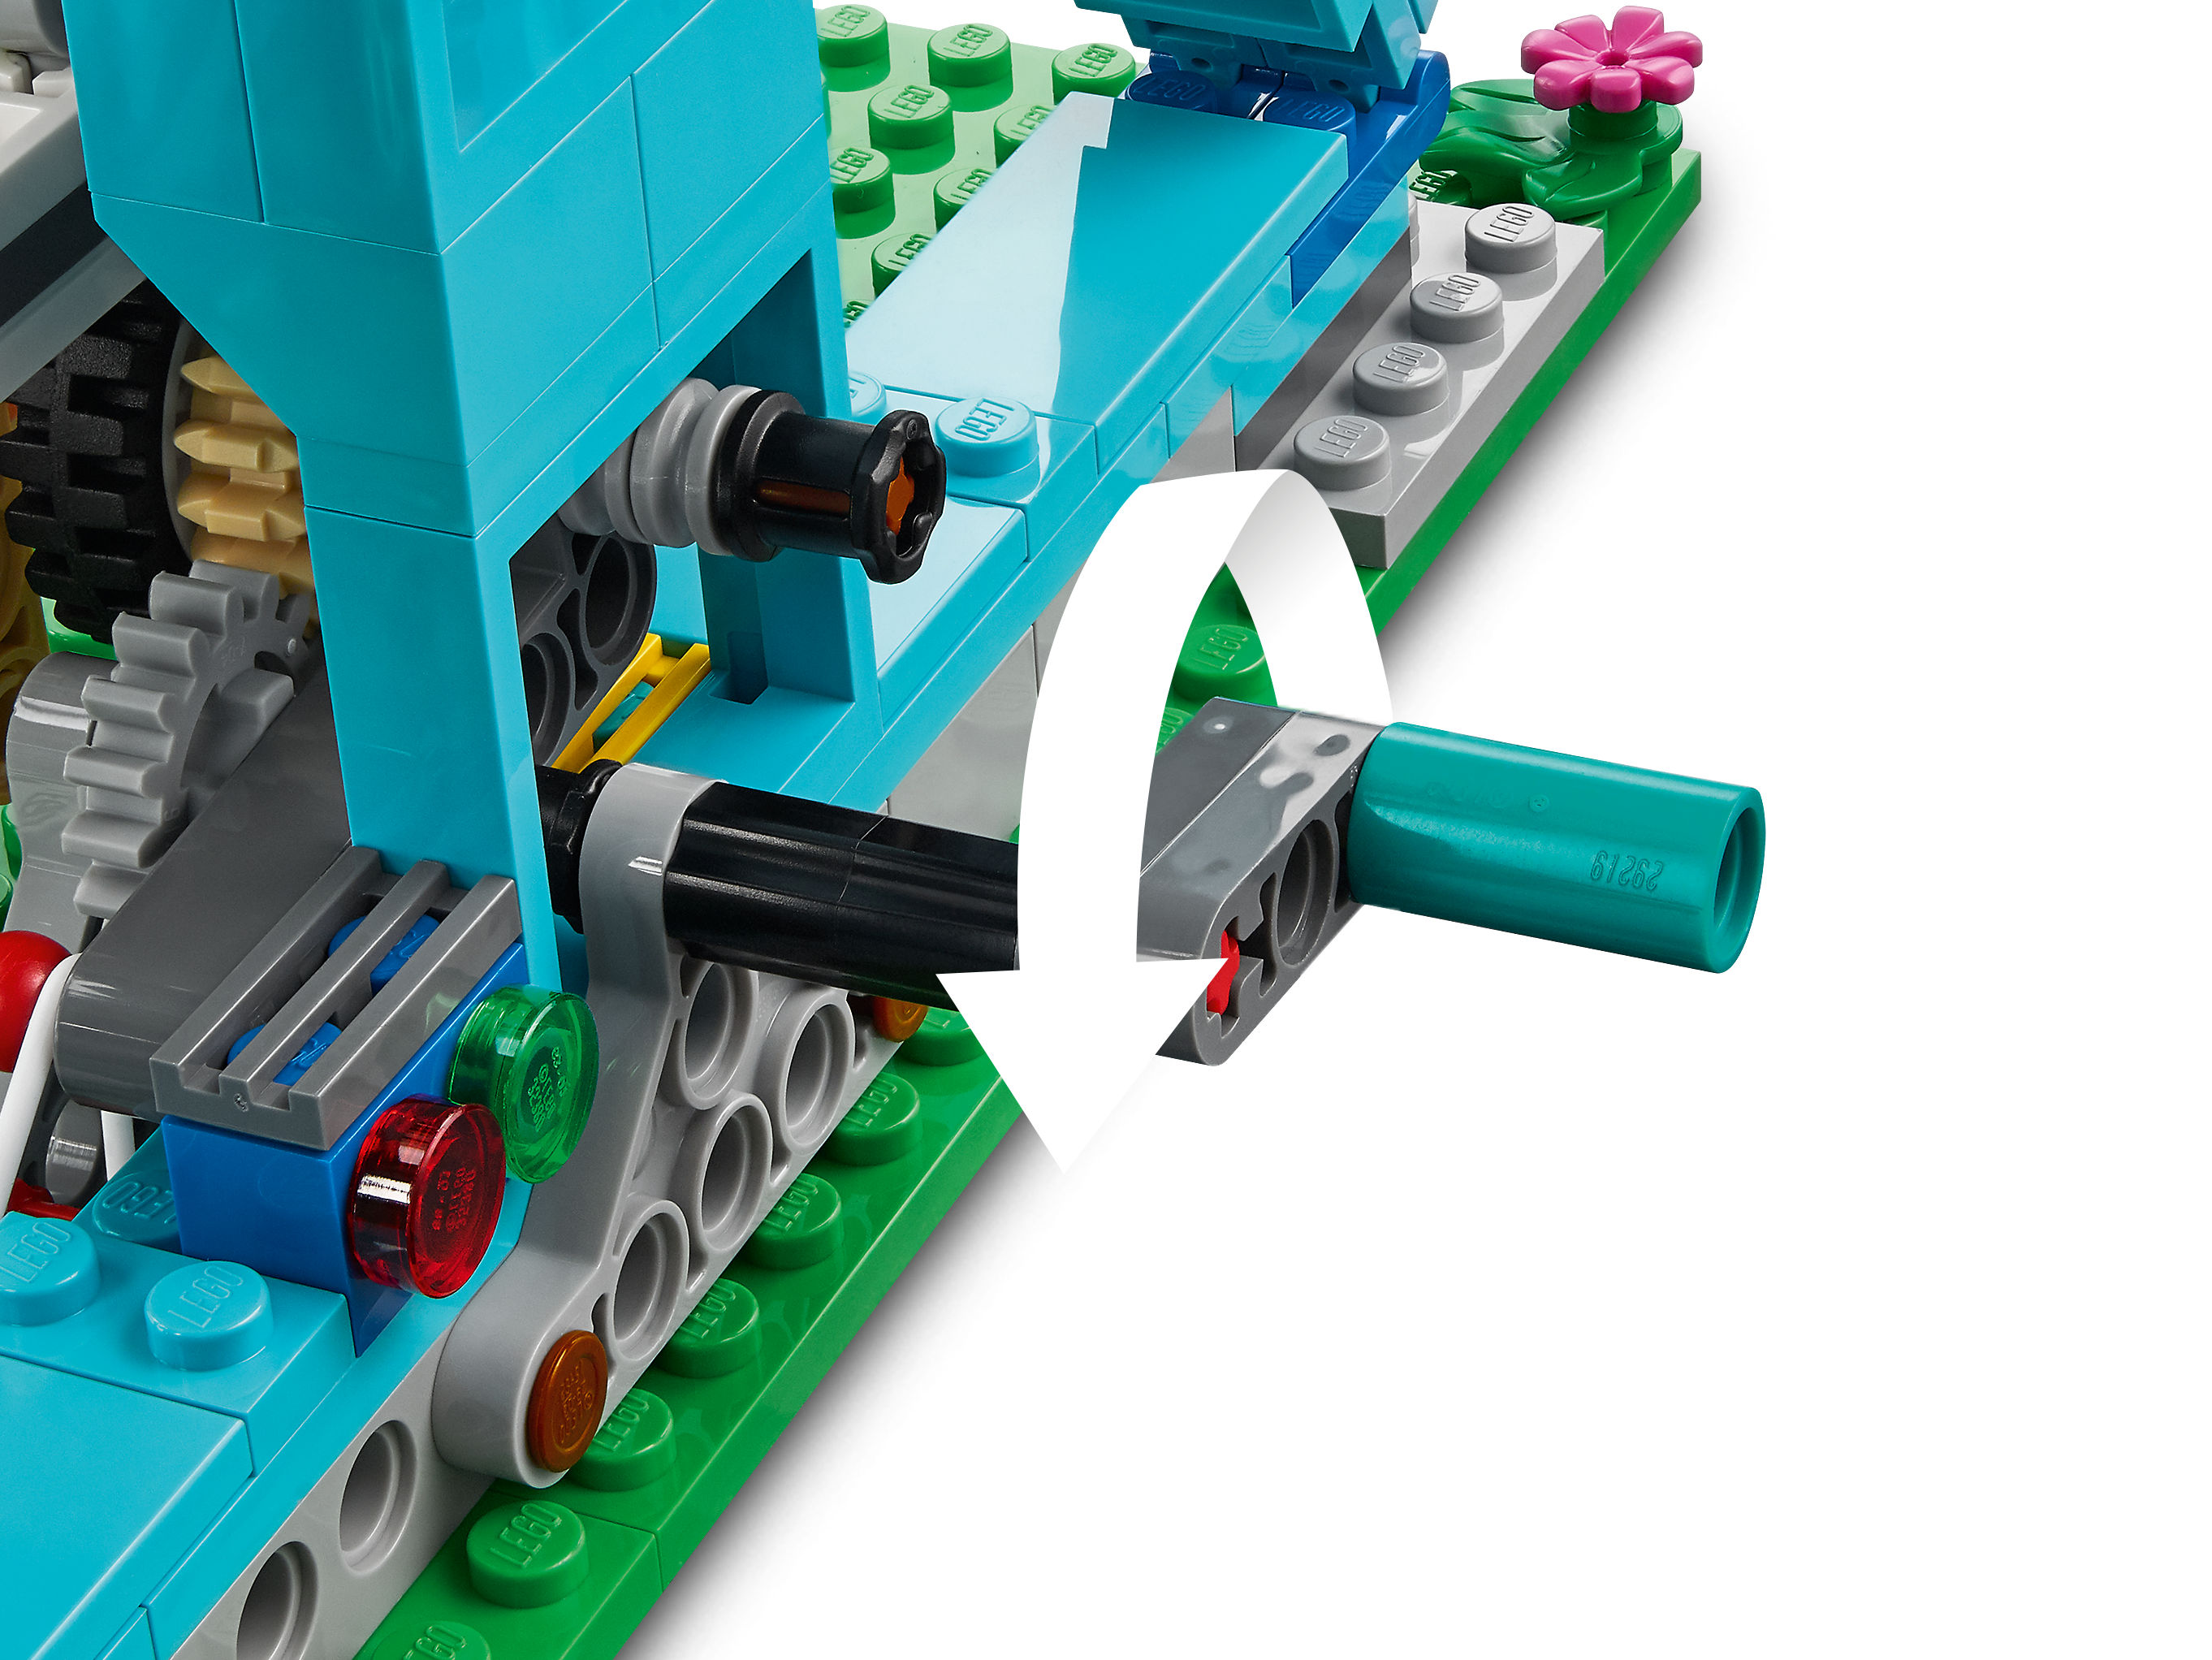 LEGO Creator 3-in-1: Ferris Wheel - LEGO - Dancing Bear Toys